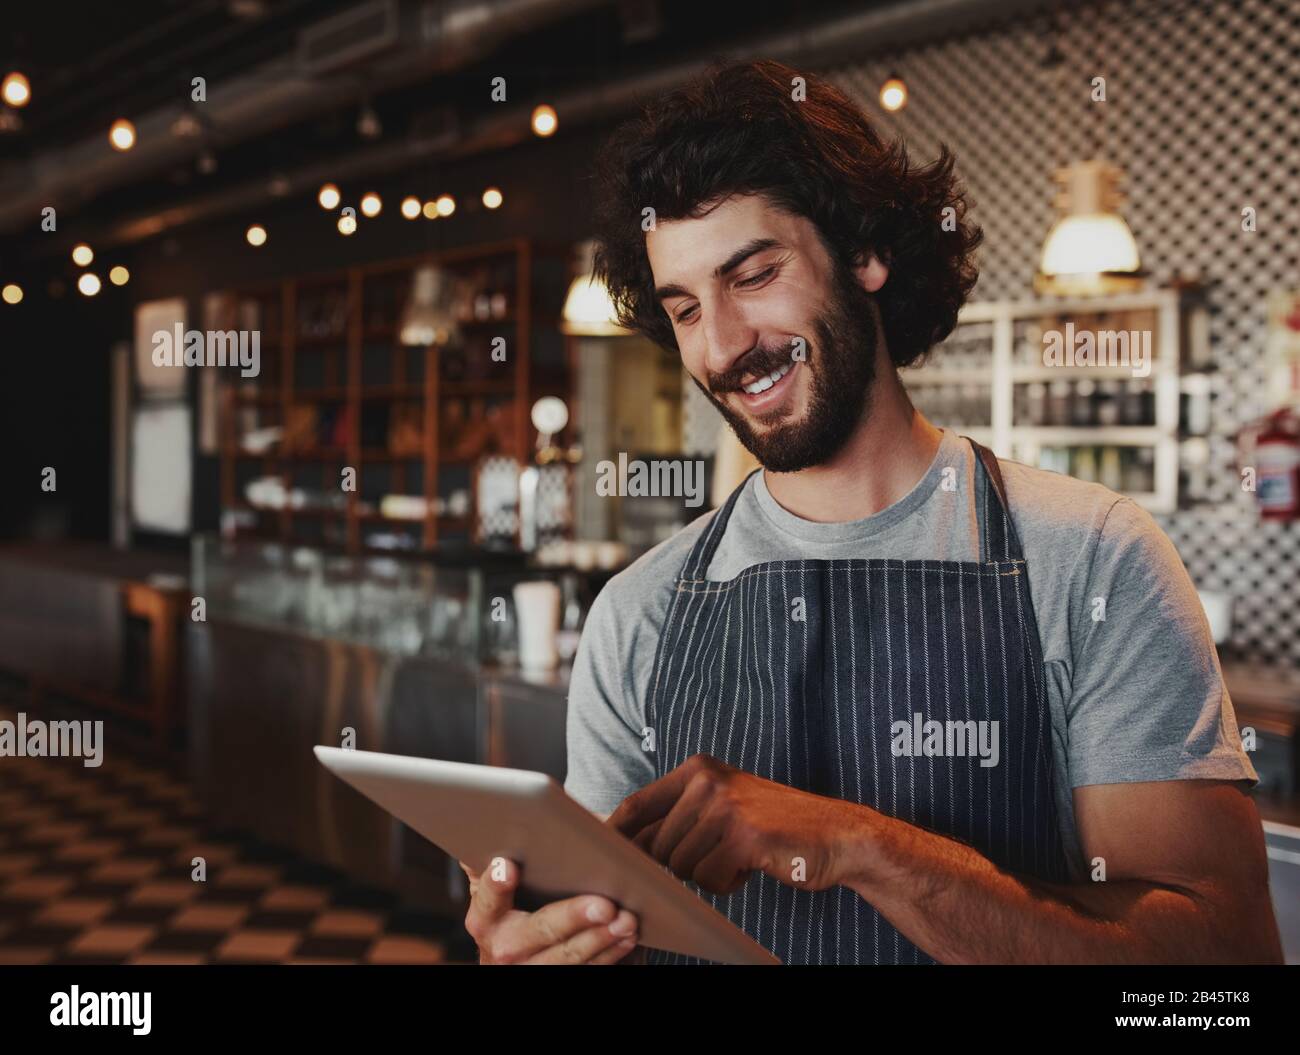 Fröhlicher junger kaukasischer Café-Besitzer, der Schürze mit digitalem Tablet trägt Stockfoto